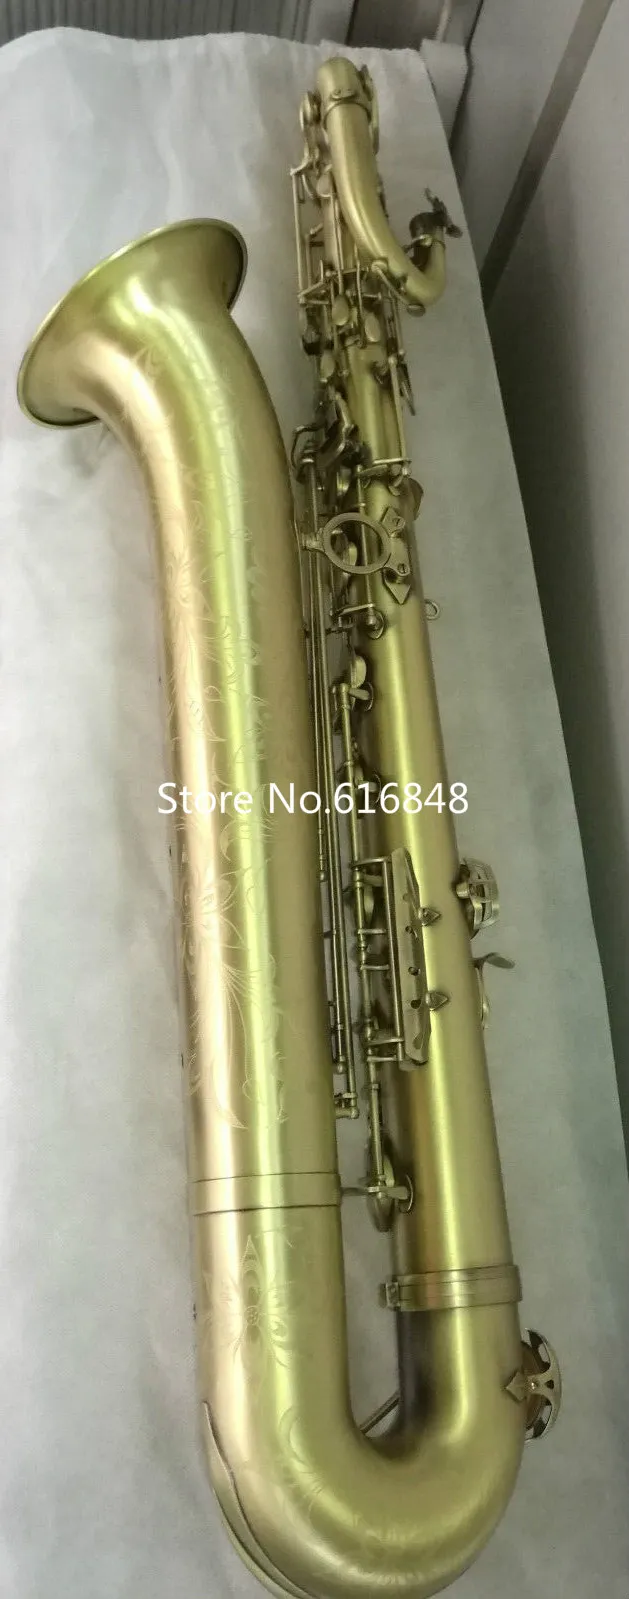 Neue Ankunft Marke Bariton Messing Rohr Saxophon Einzigartige Vintage Kupfer Oberfläche E Flache Instrument Mit Fall Kann Angepasst Werden Logo